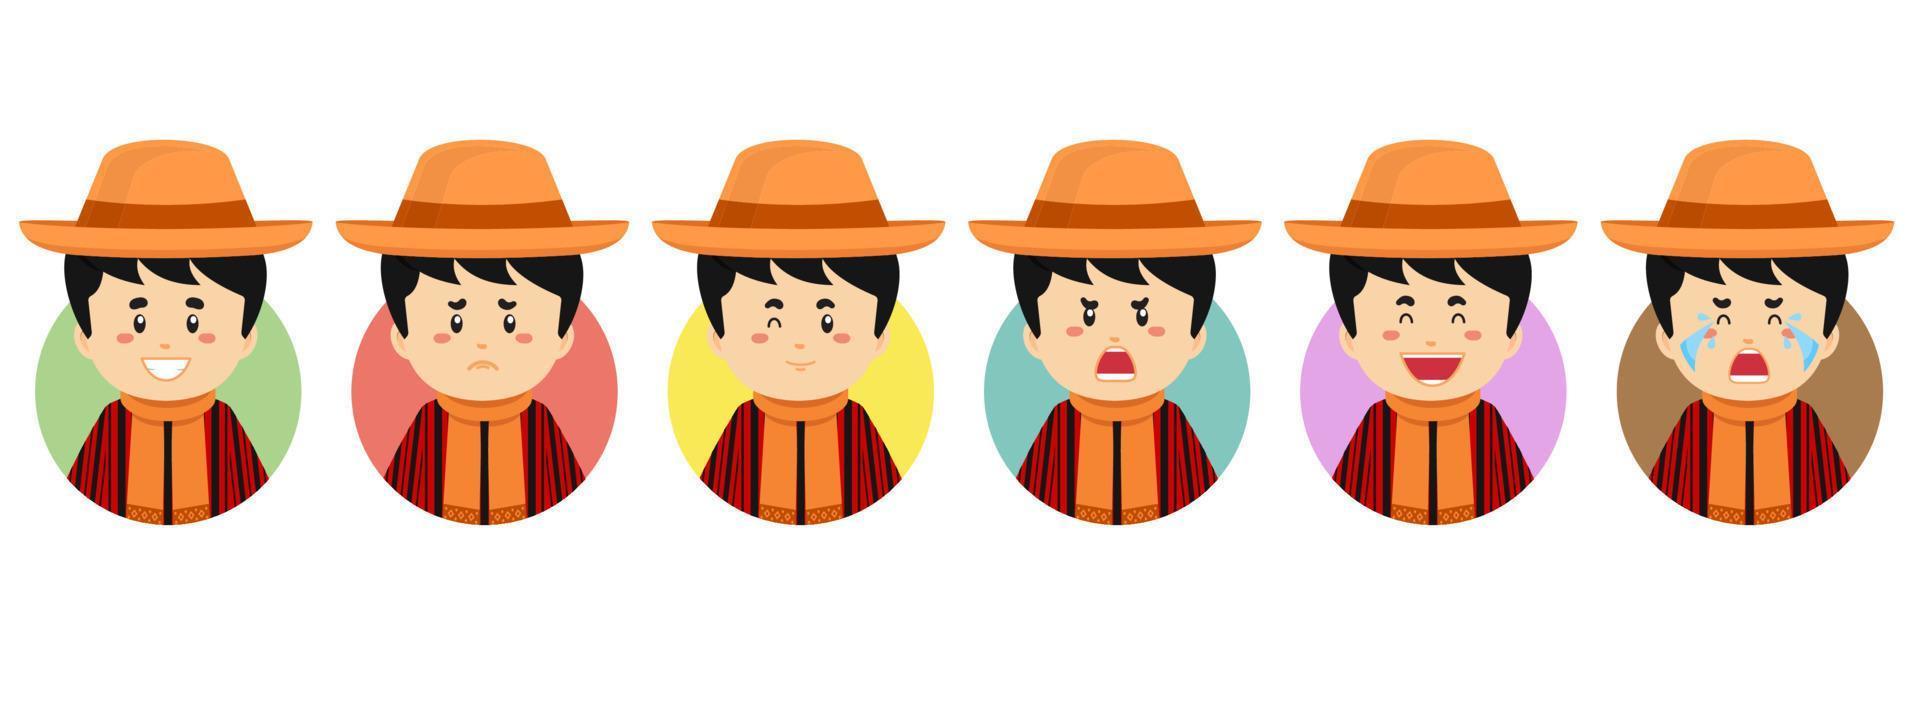 Bolivia-avatar met verschillende uitdrukkingen vector